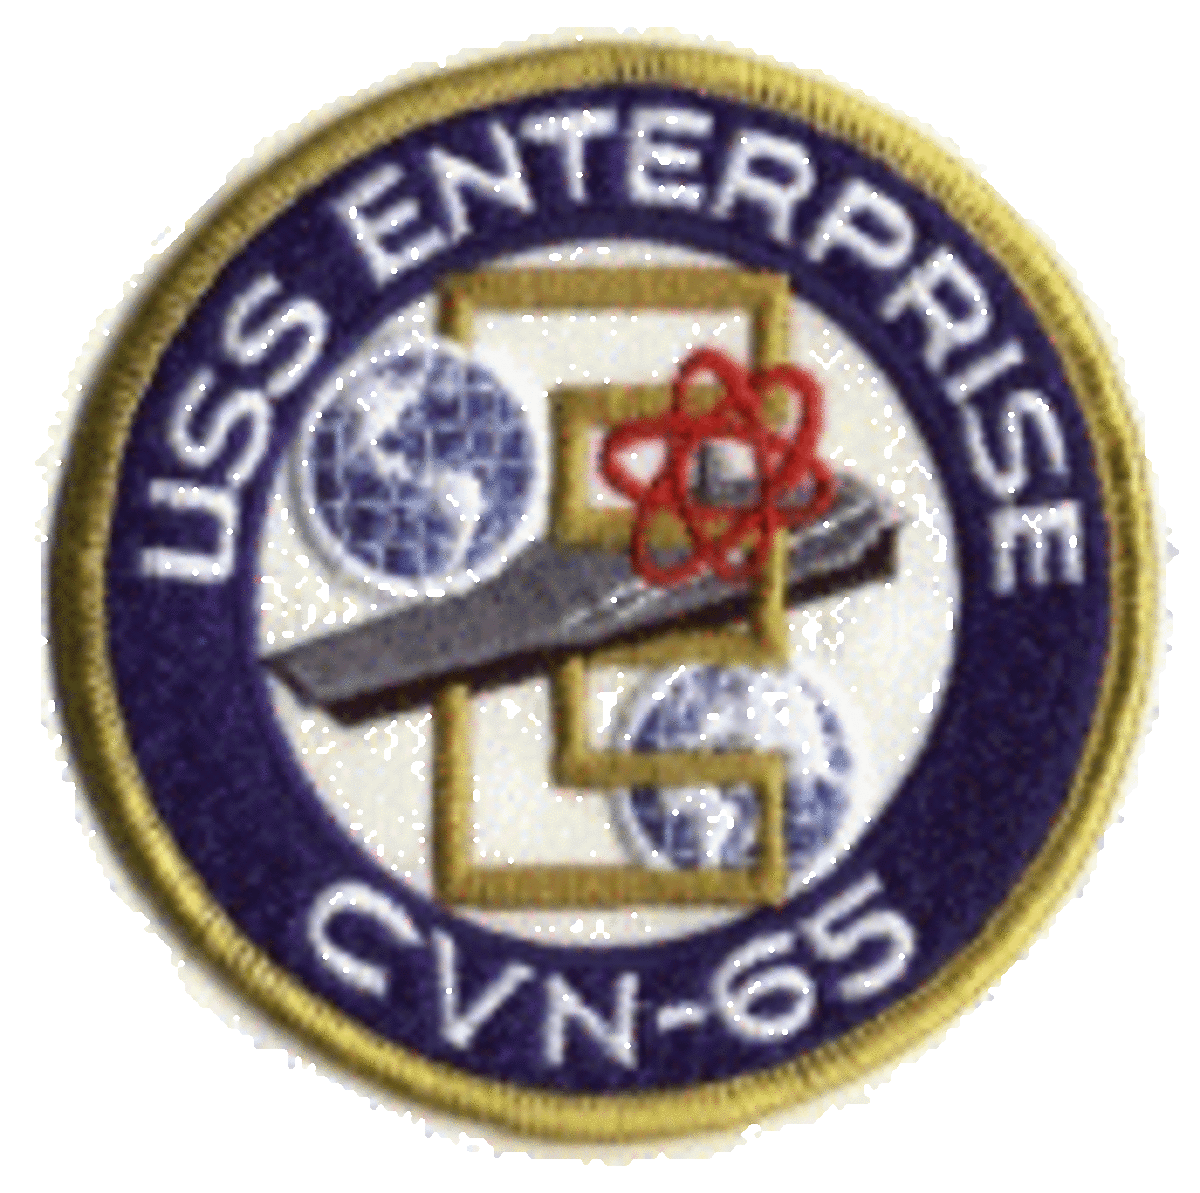 USS Enterprise (CVN-65) patch